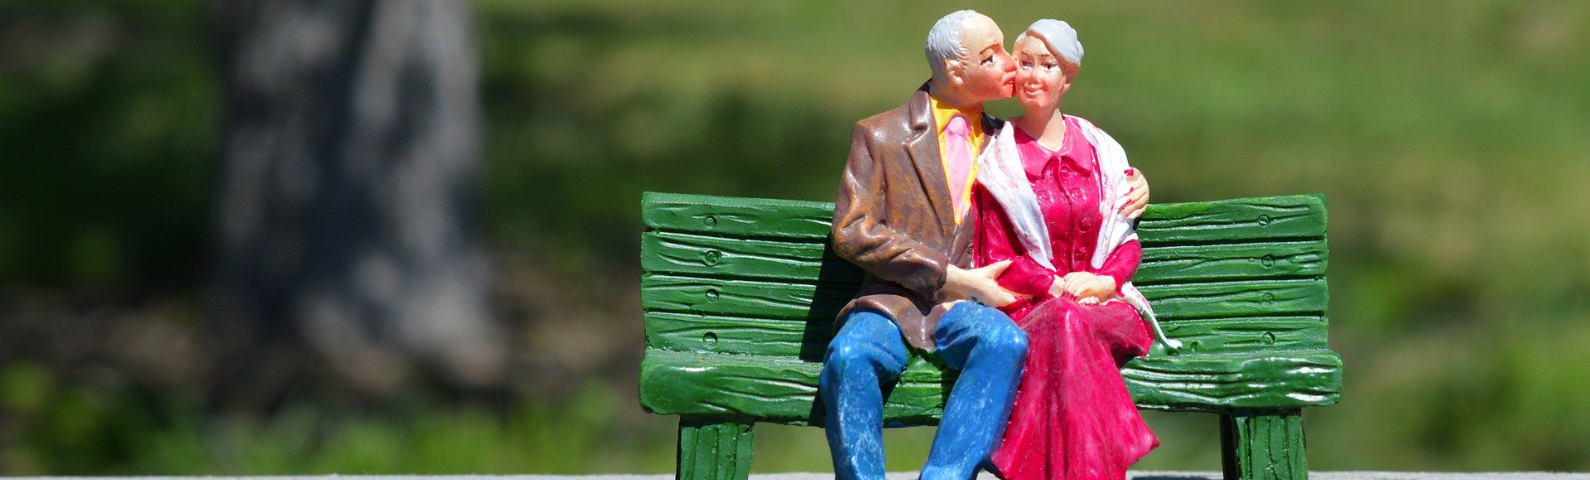 Zwei ältere Modellfigurern sitzen auf einer Parkbank